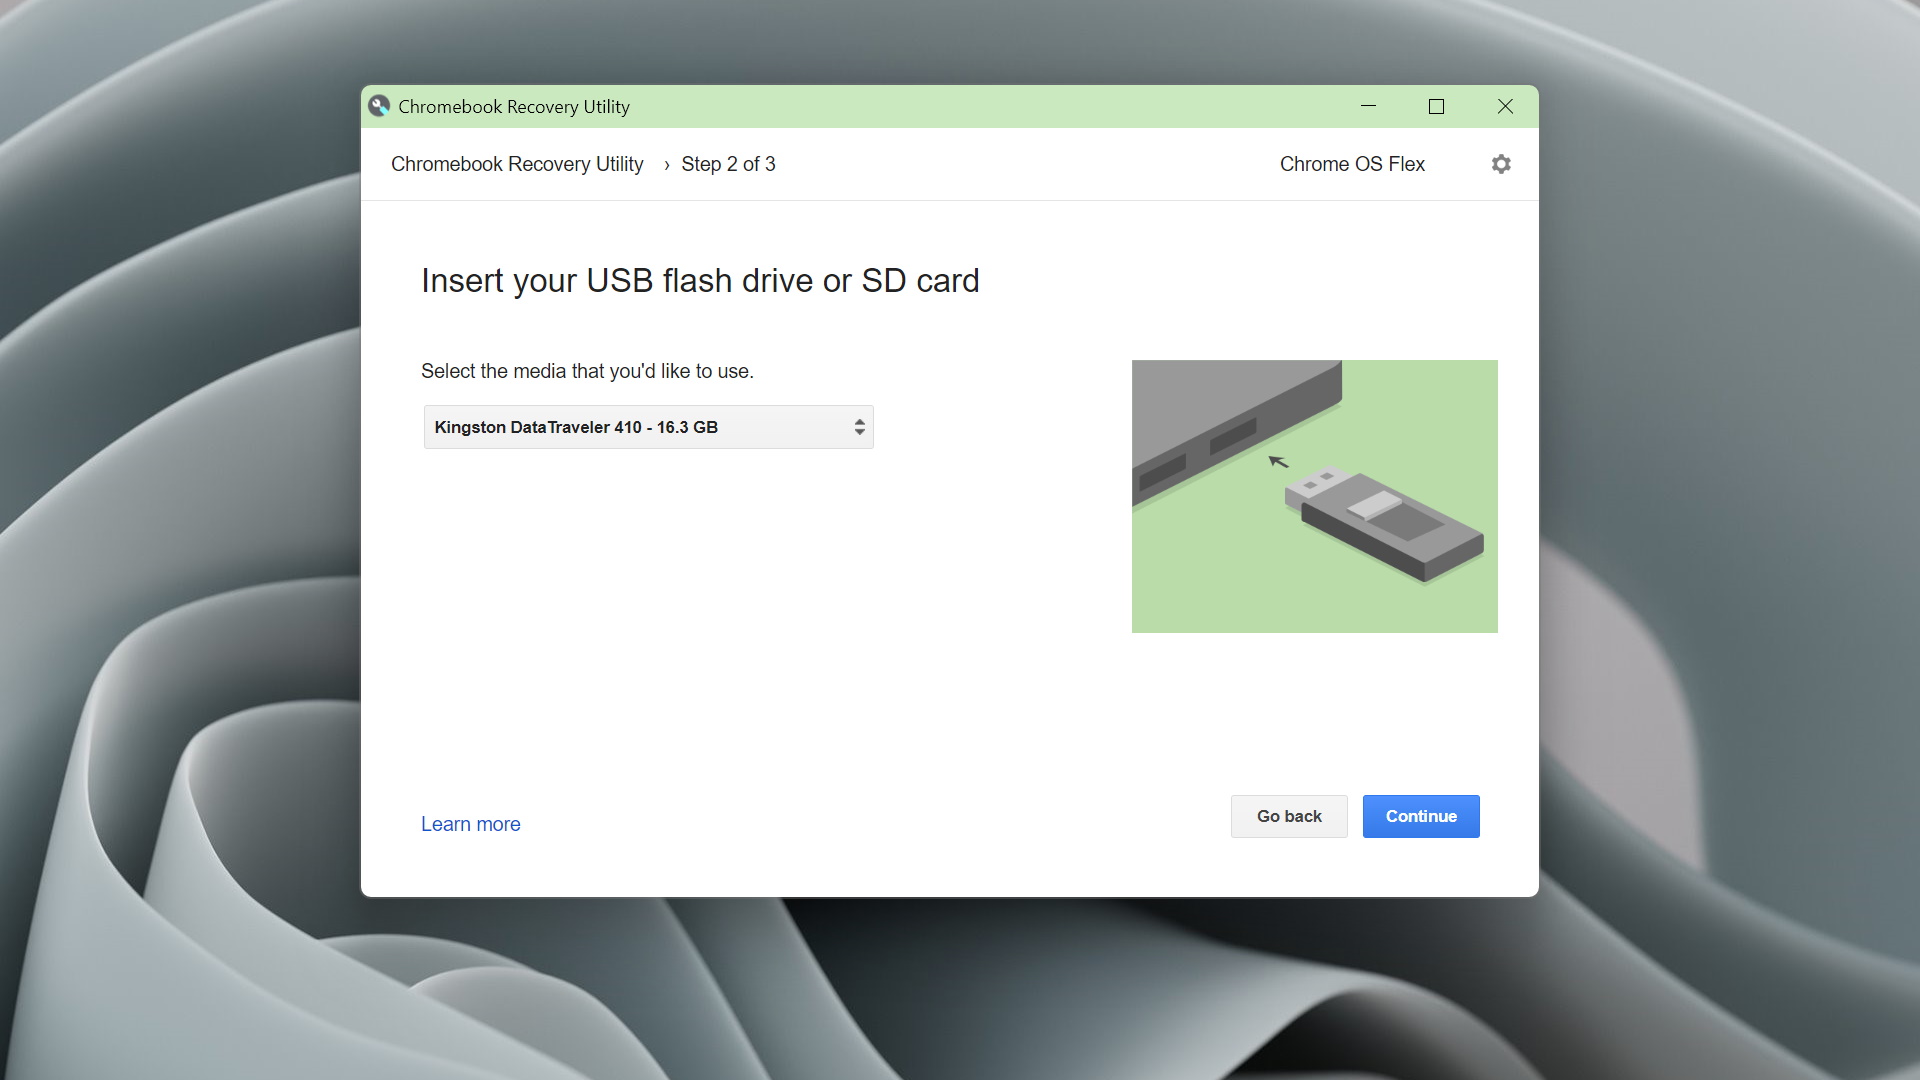 Google Chrome OS Flex running on an Acer Aspire V5